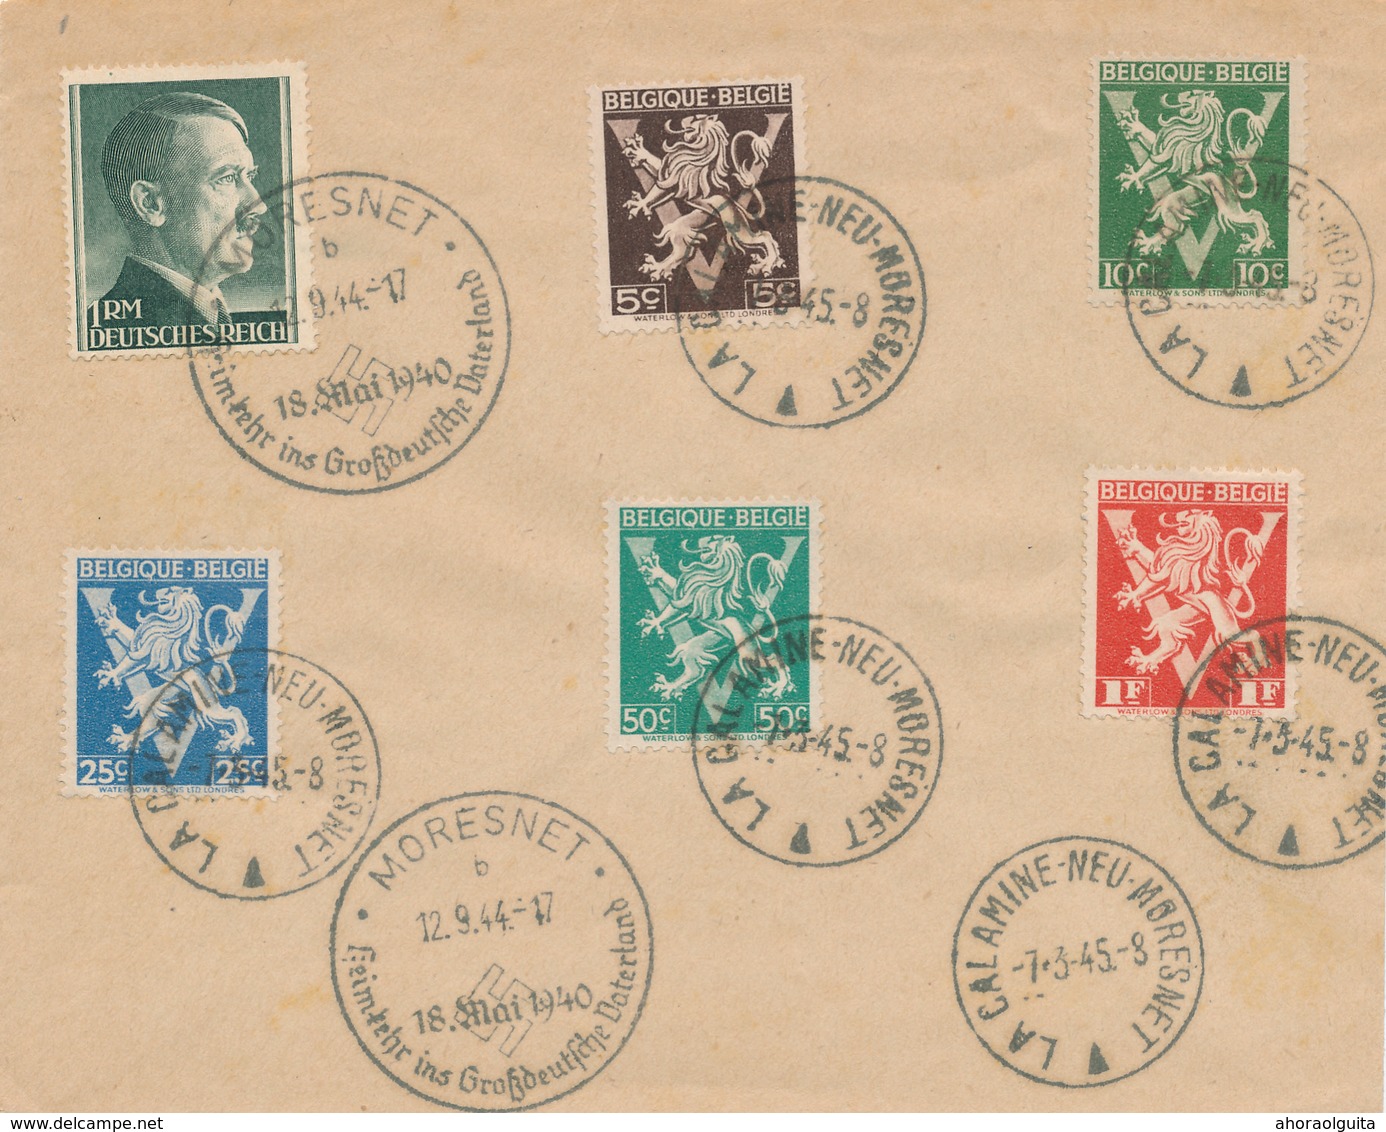 861/28 - CANTONS DE L'EST - Enveloppe Souvenir TP Hitler MORESNET 1944 + Lions V LA CALAMINE NEU MORESNET 1945 - Covers & Documents